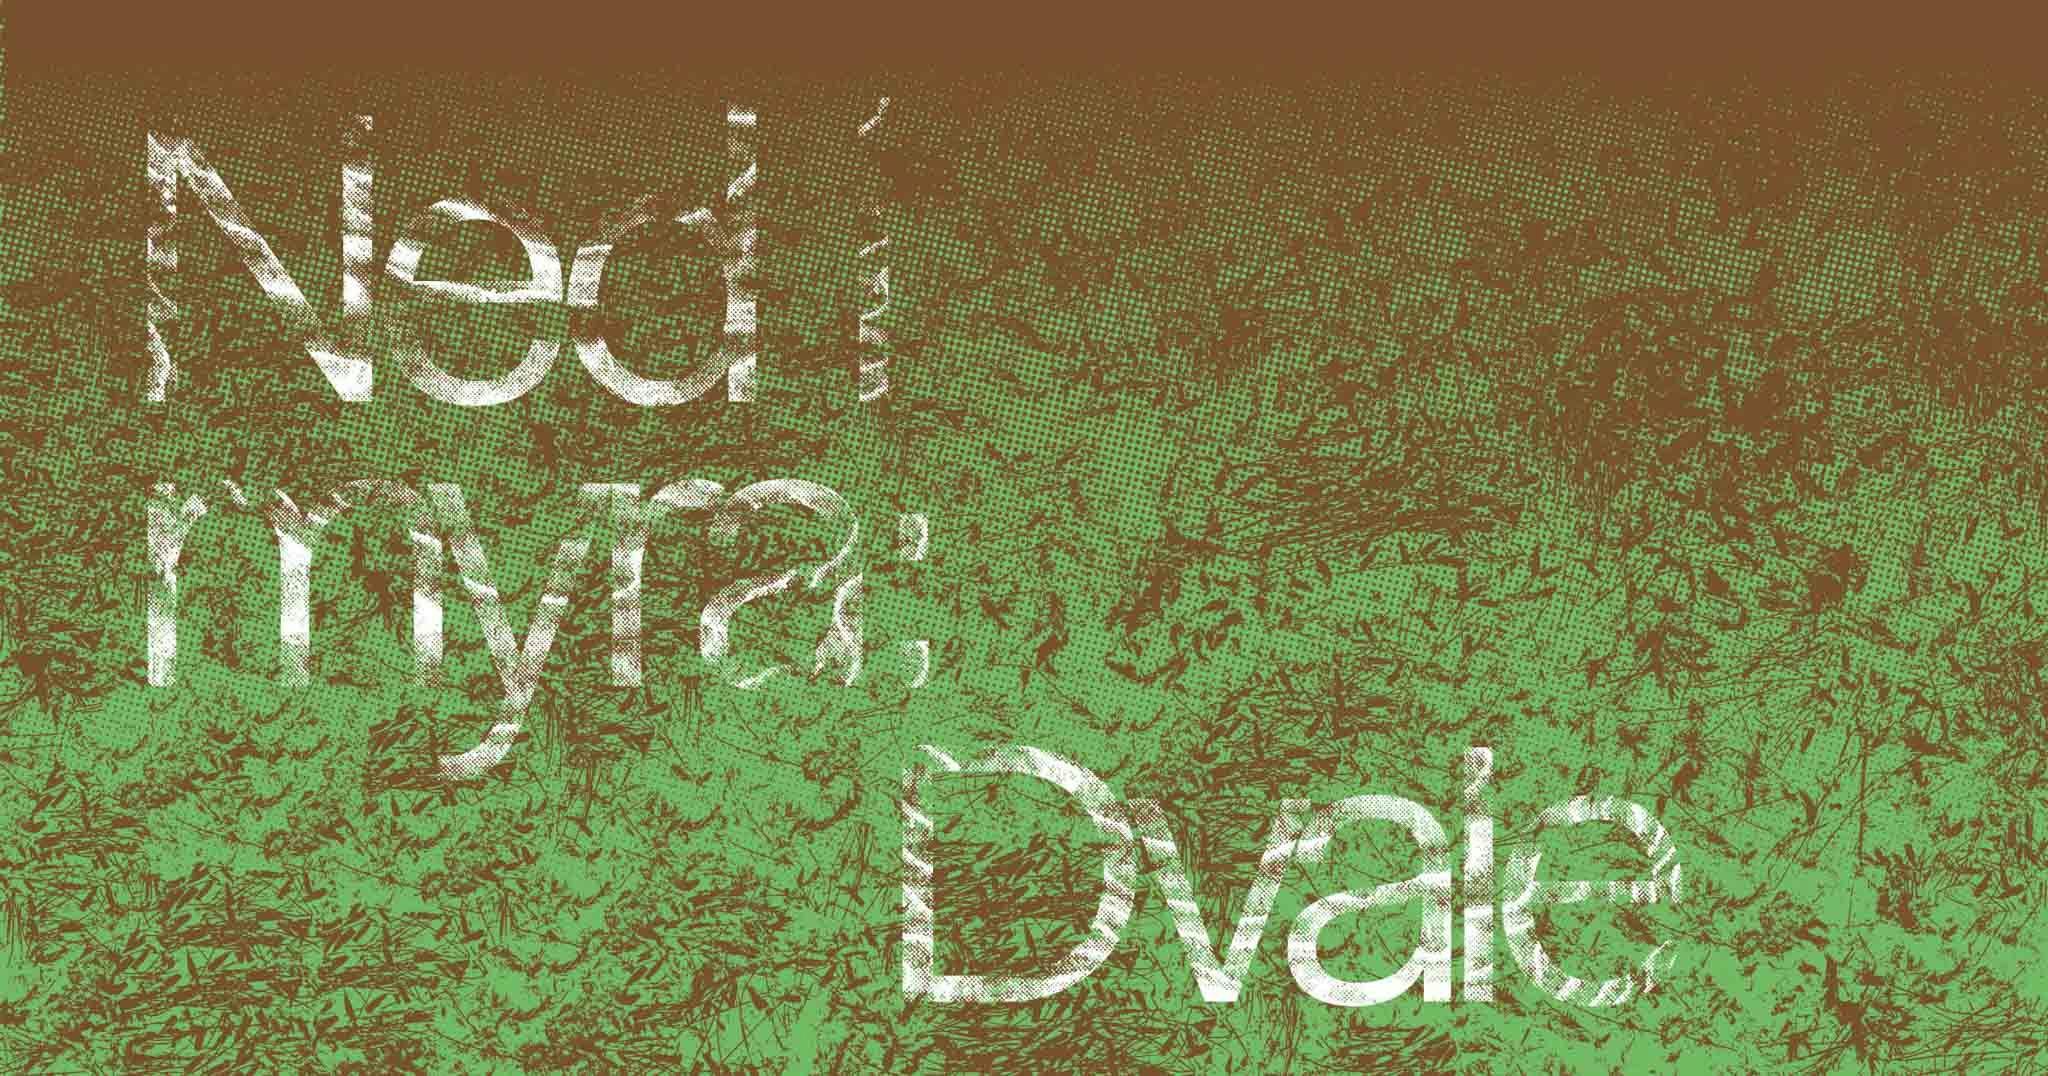 Grønn og brun abstrakt bakkgrunn med hvit tekst 'Ned i myra: dvale' på toppen. 